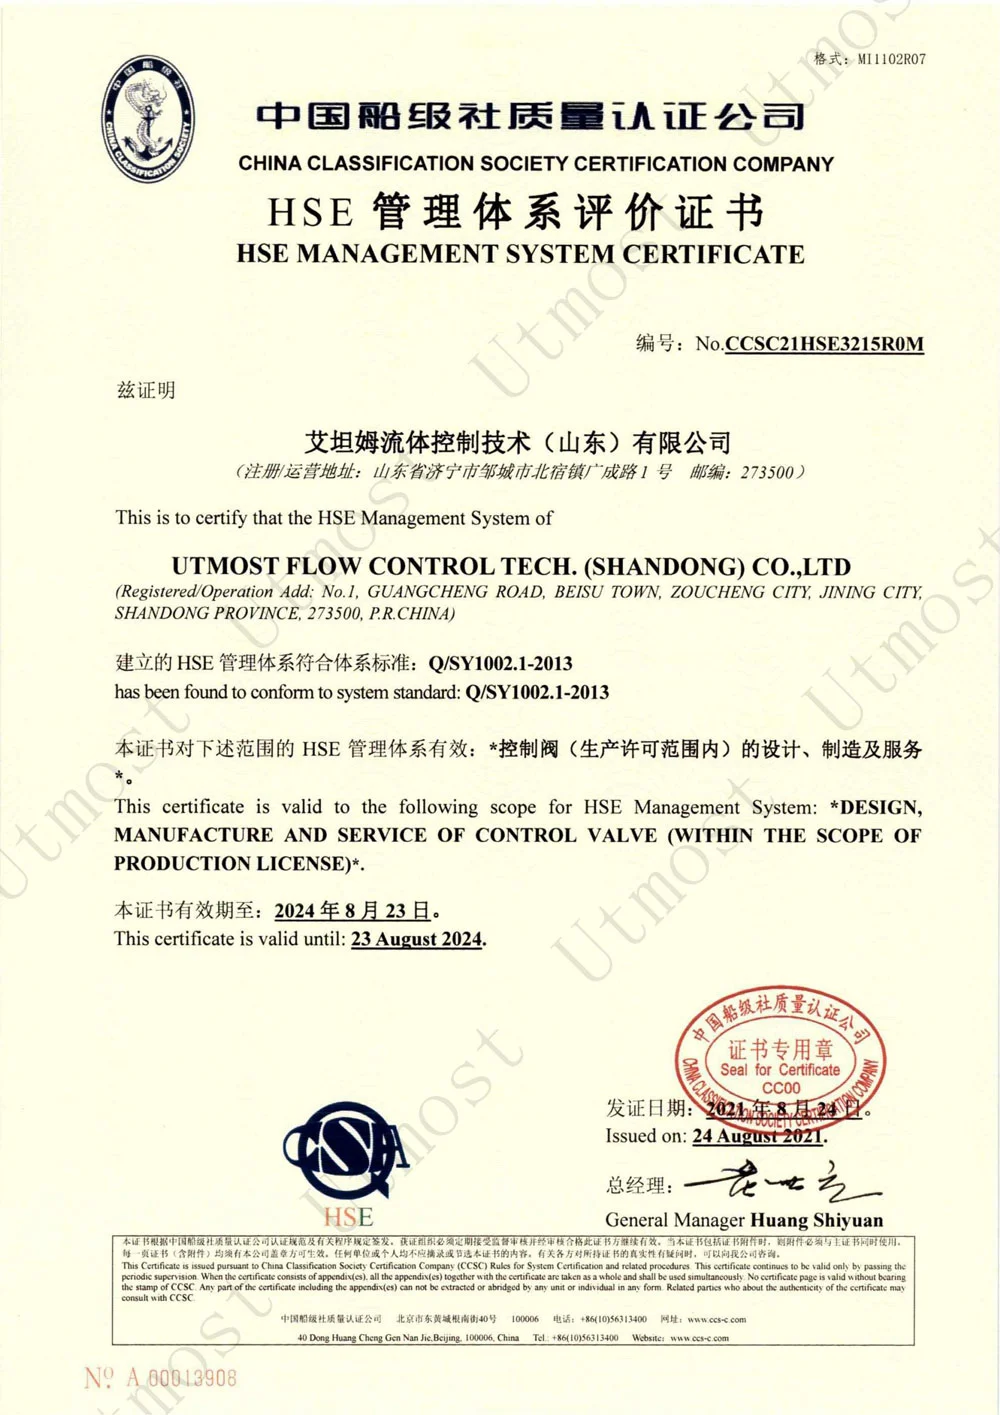 hse managem ent system certificate